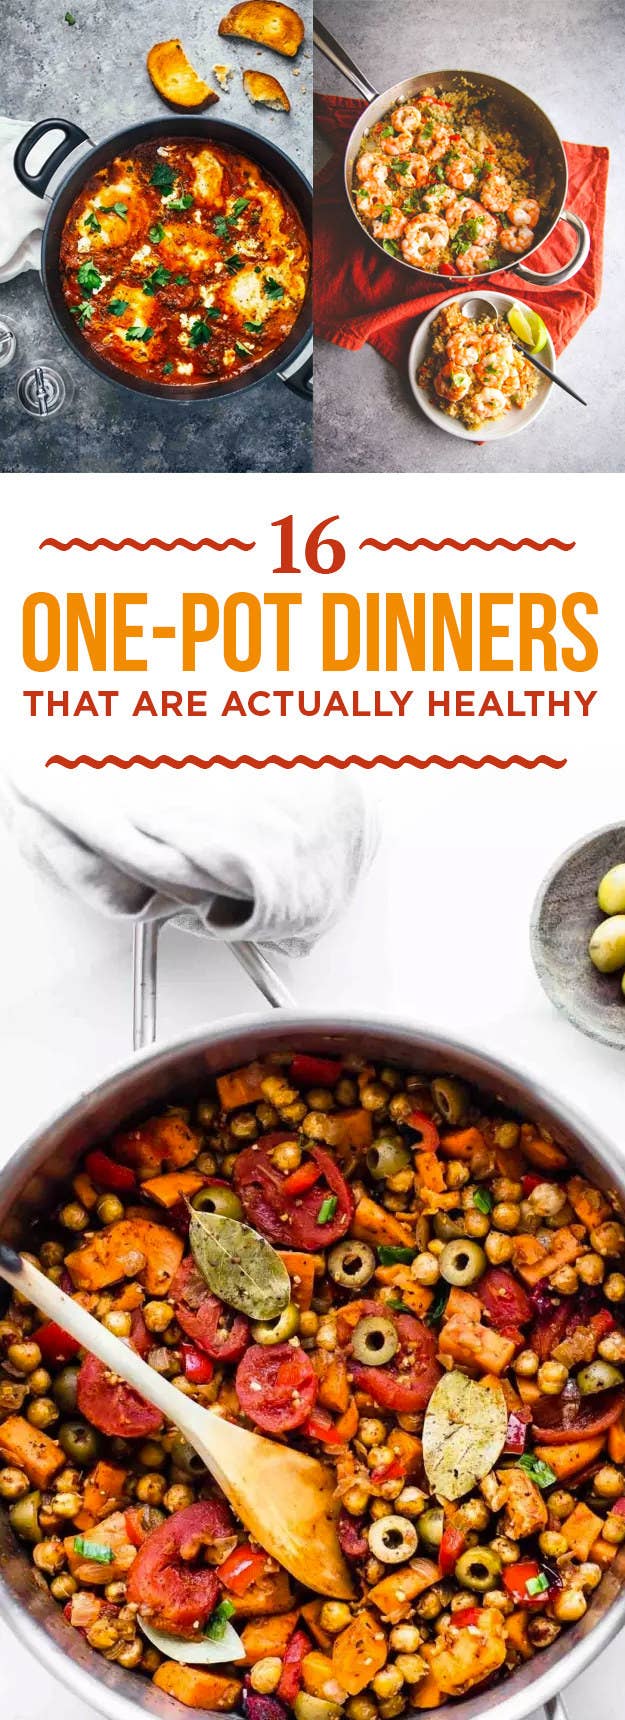 Healthy one-pot recipes